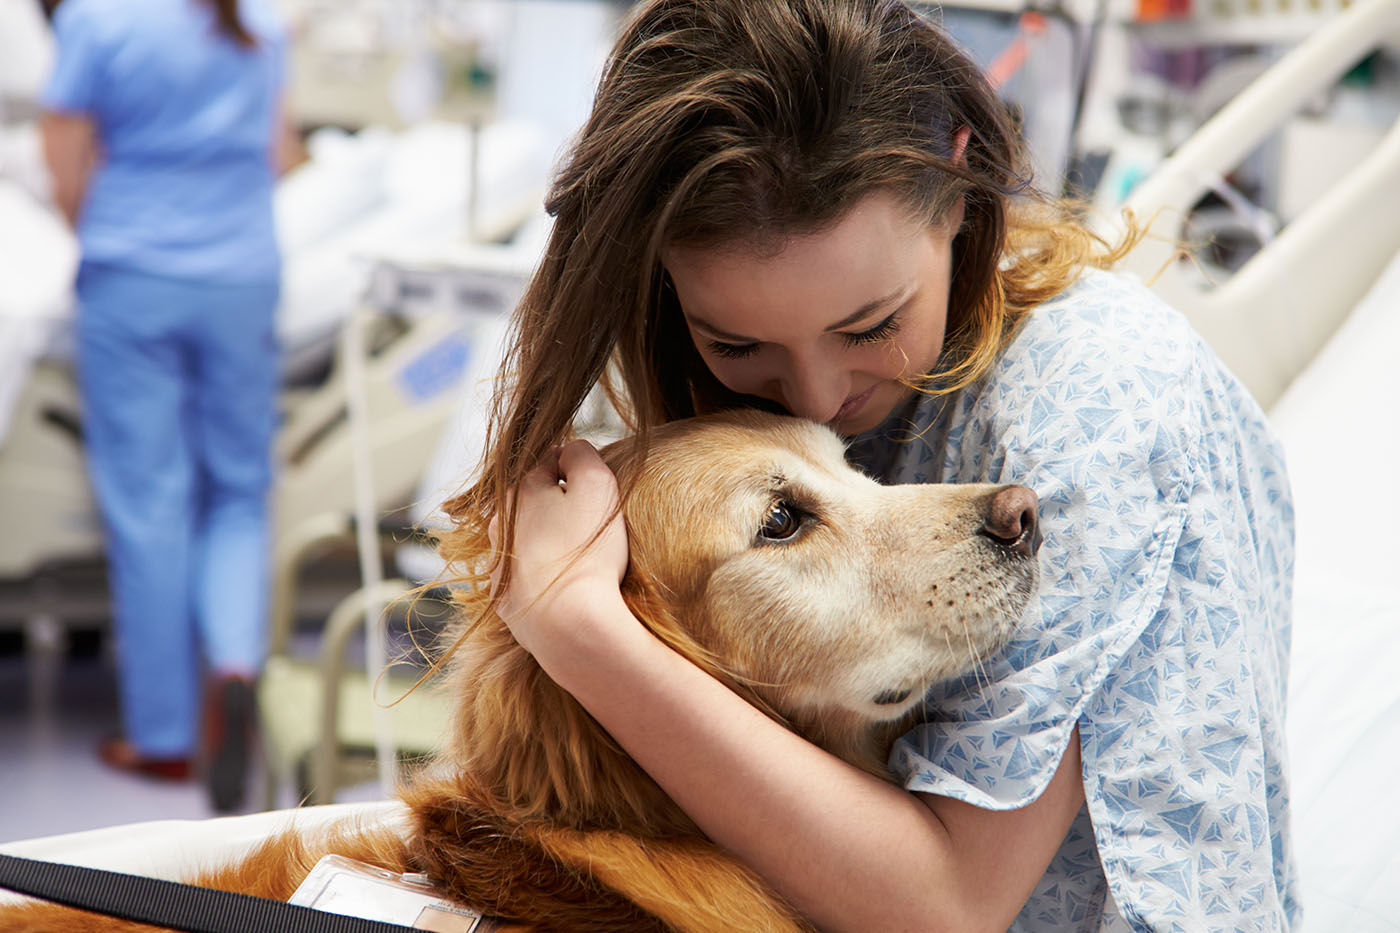 Un chien de médiation visitant une jeune femme malade
Médiation animale et santé